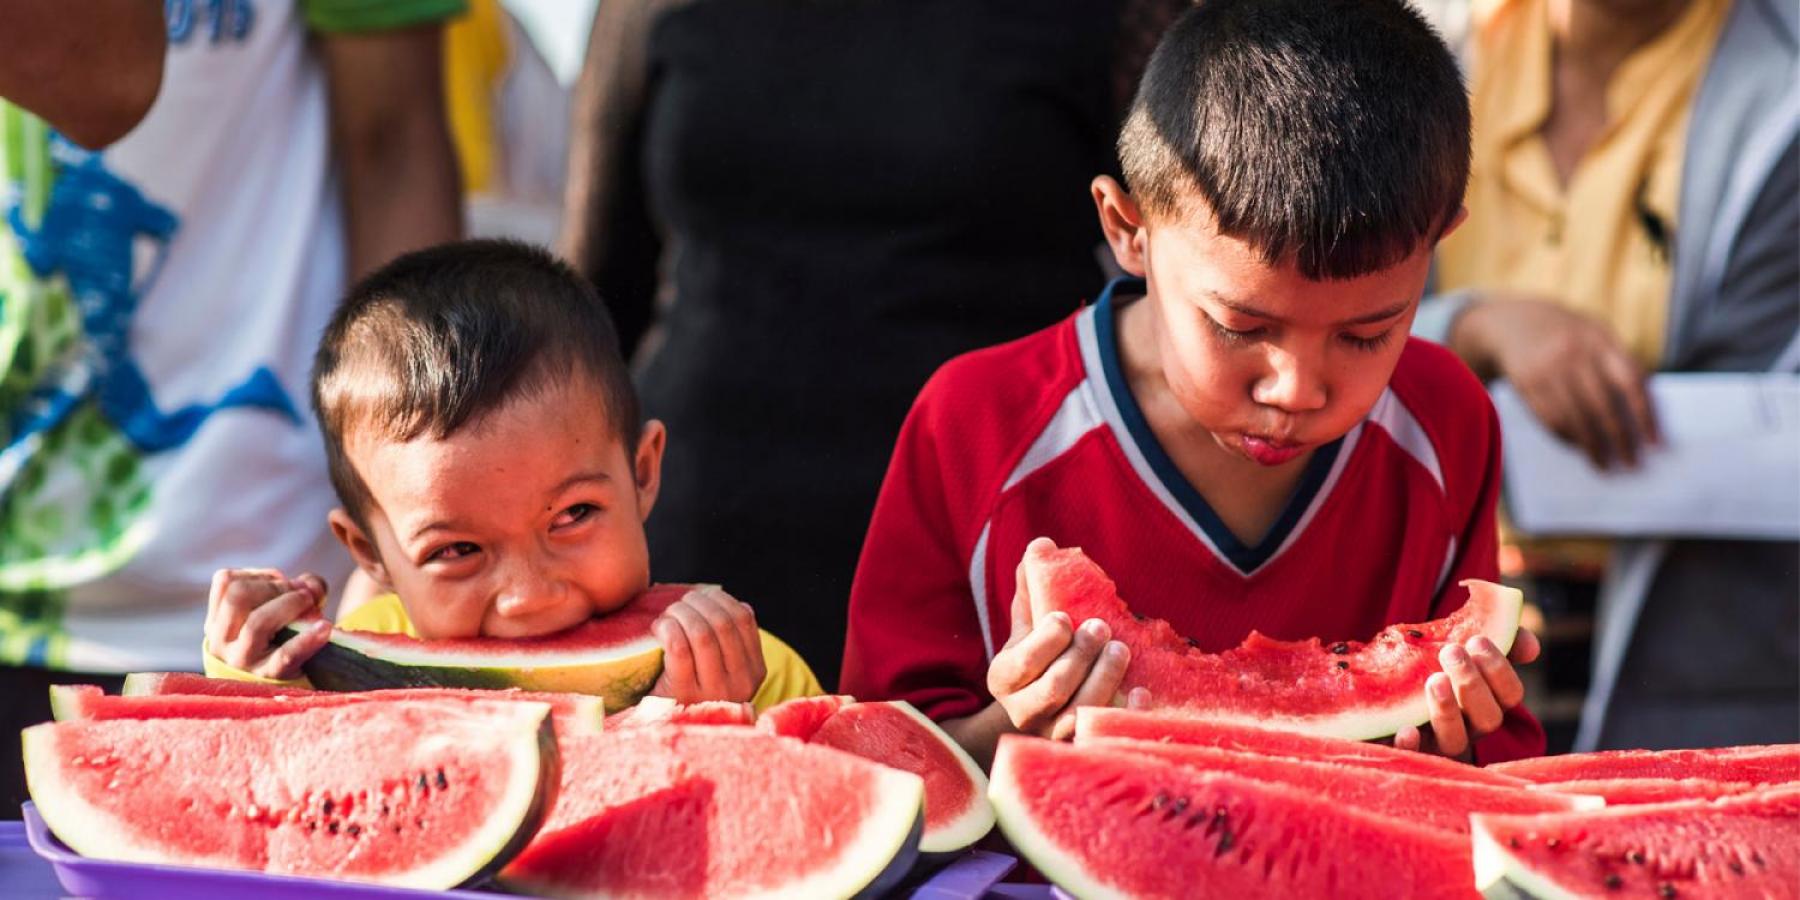 Enfants mangeant de la pastèque au Mexique